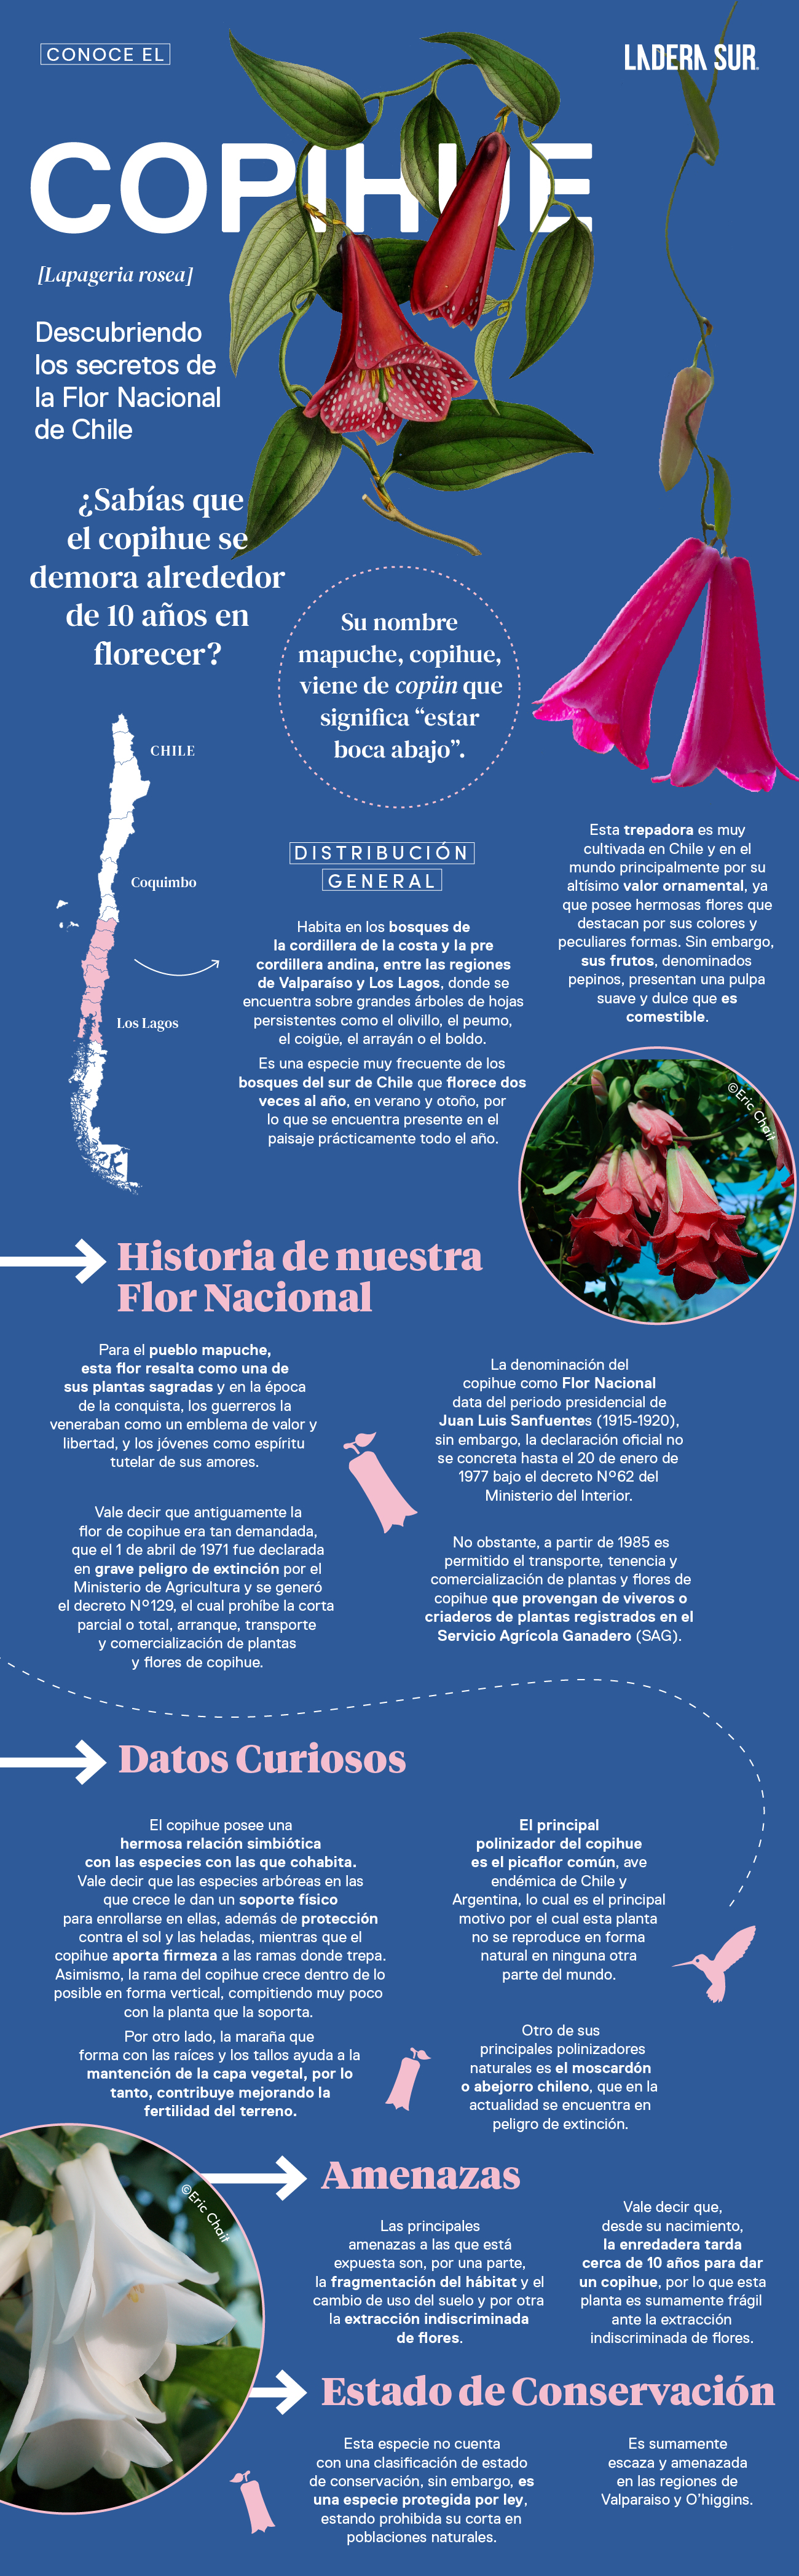 Copihue, descubriendo los secretos de la Flor Nacional de Chile